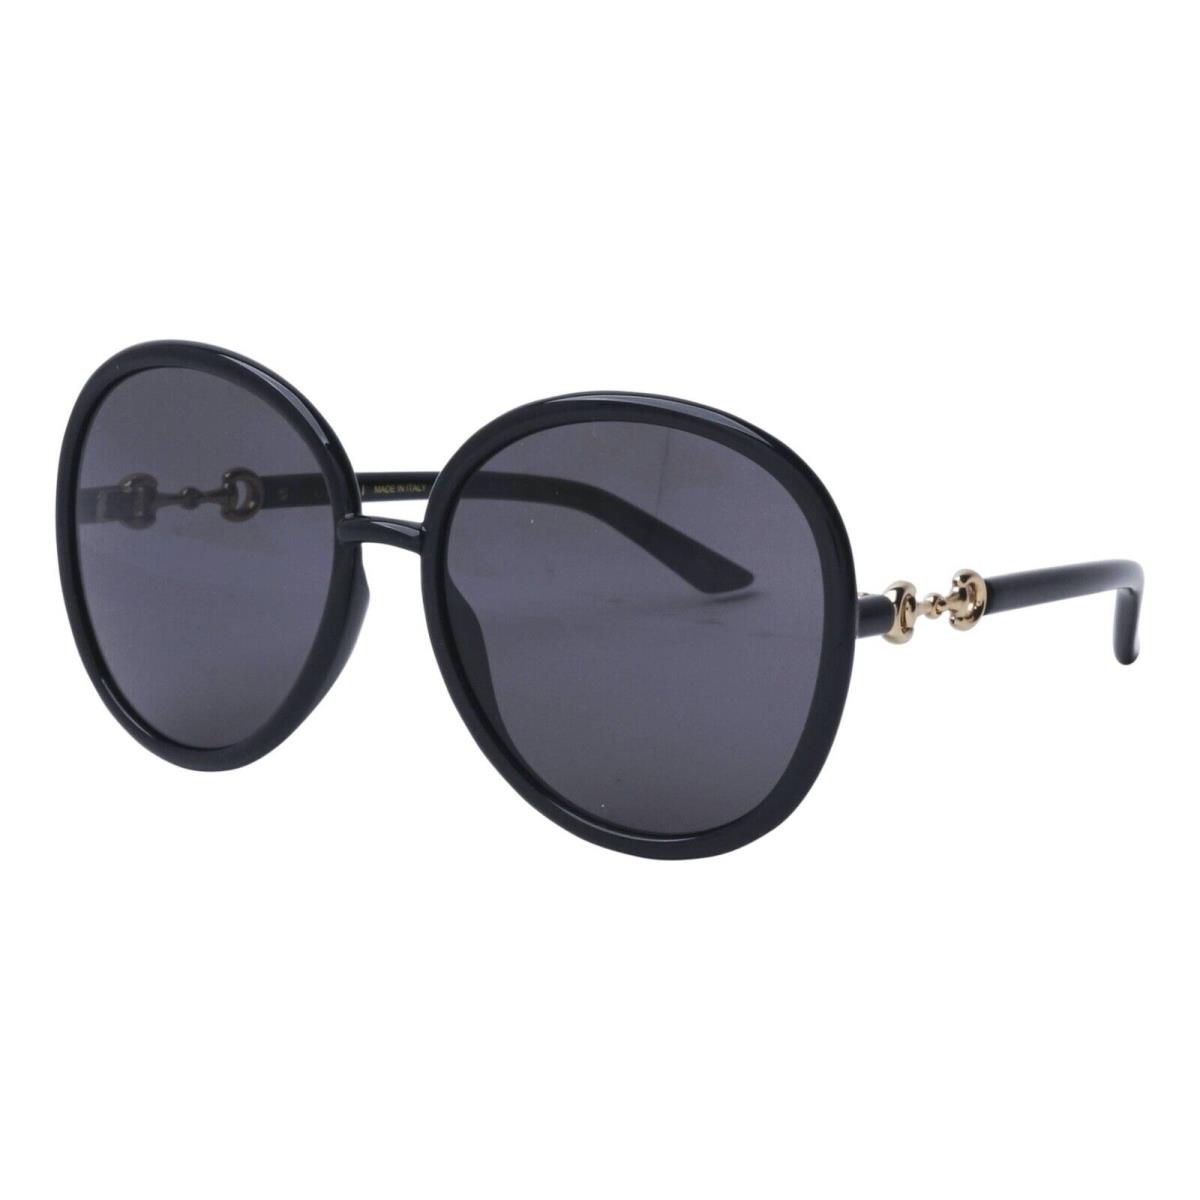 Gucci Women Sunglasses GG0889S-001 Black Frame Grey Lenses